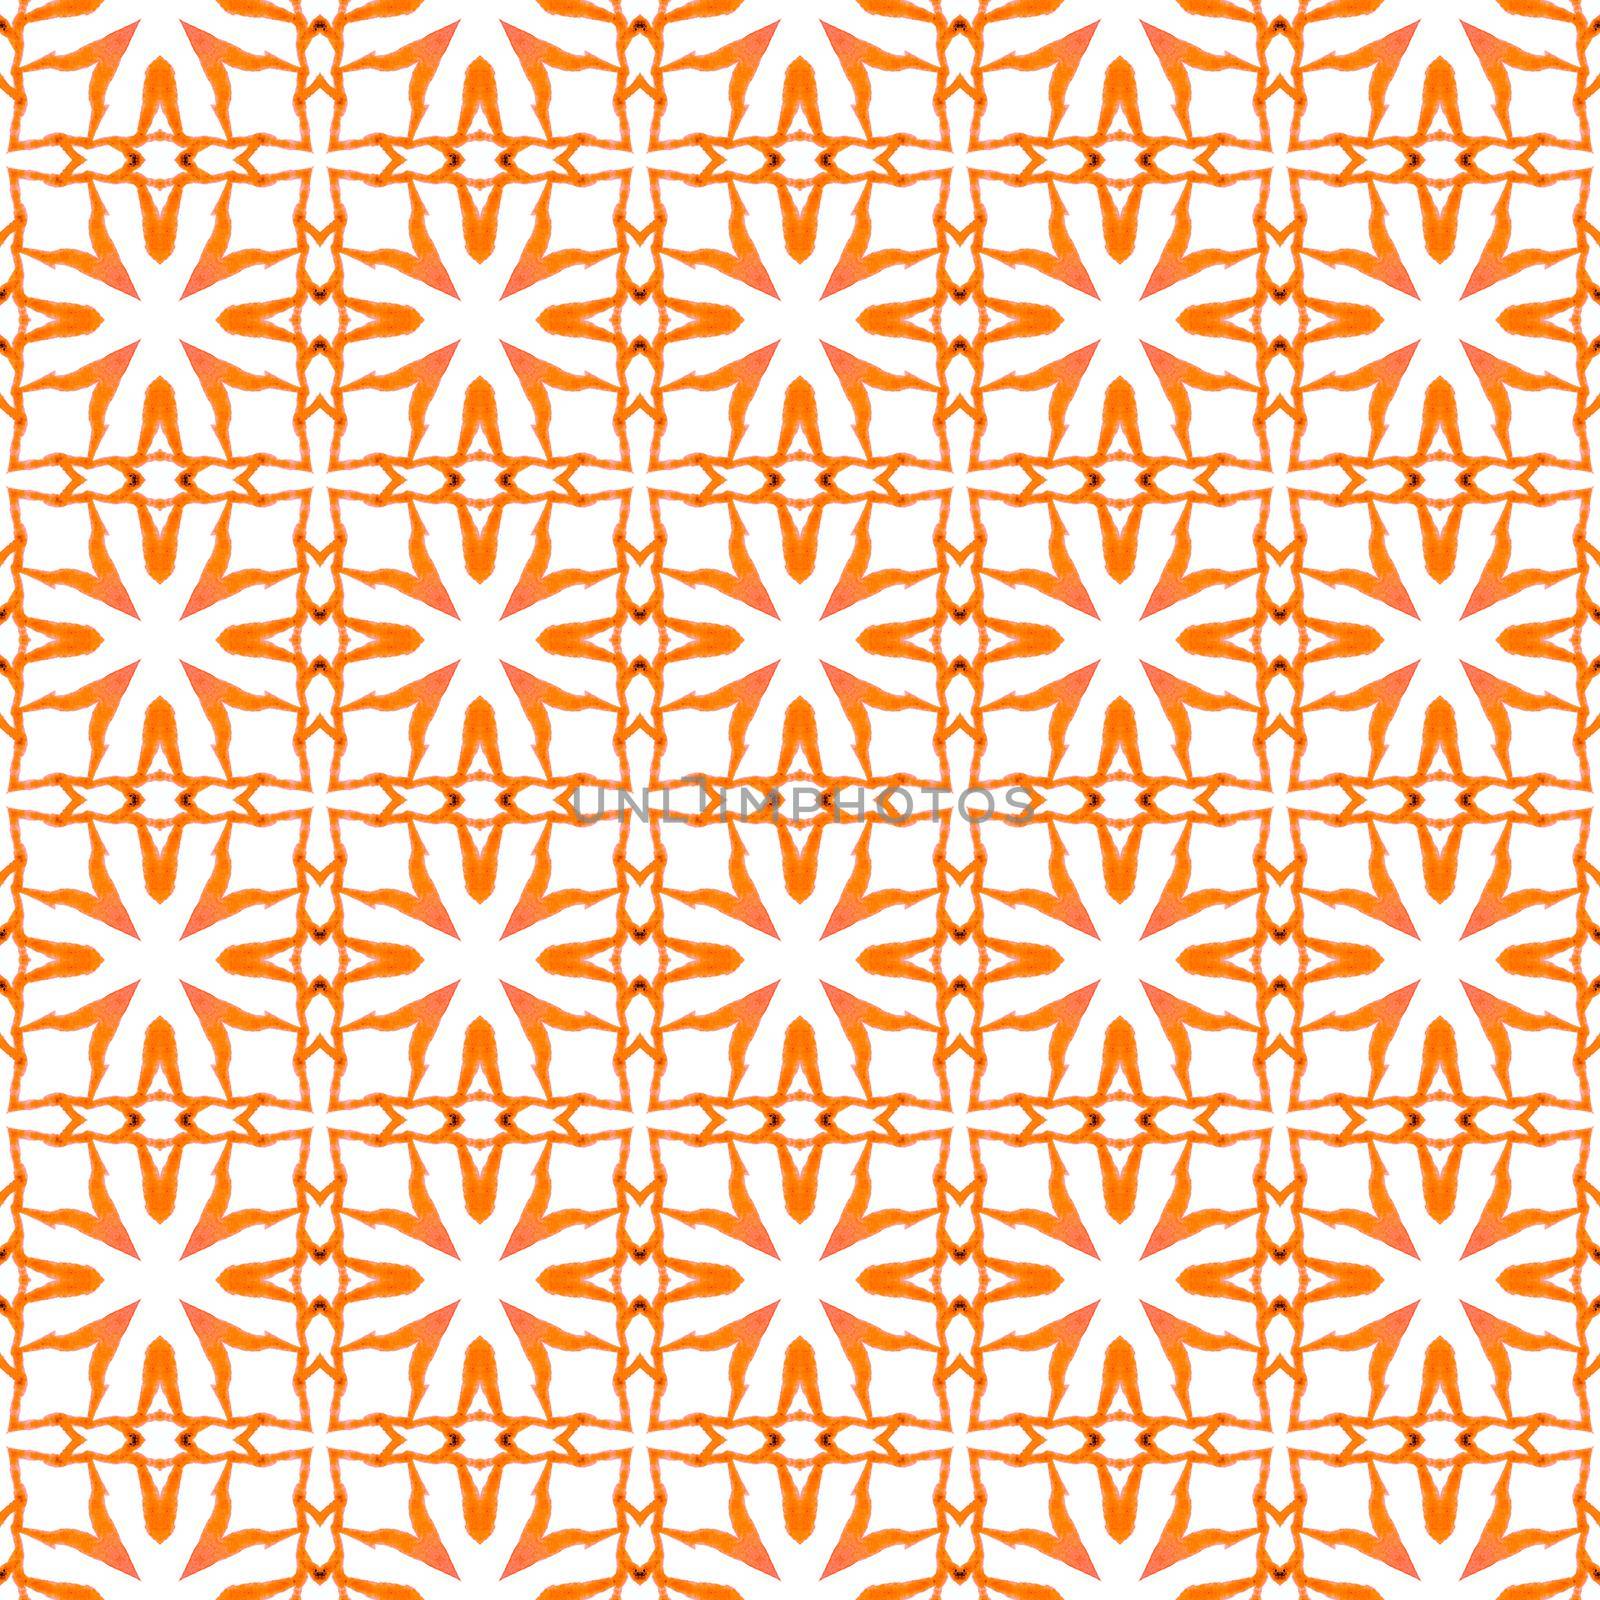 Oriental arabesque hand drawn border. Orange by beginagain